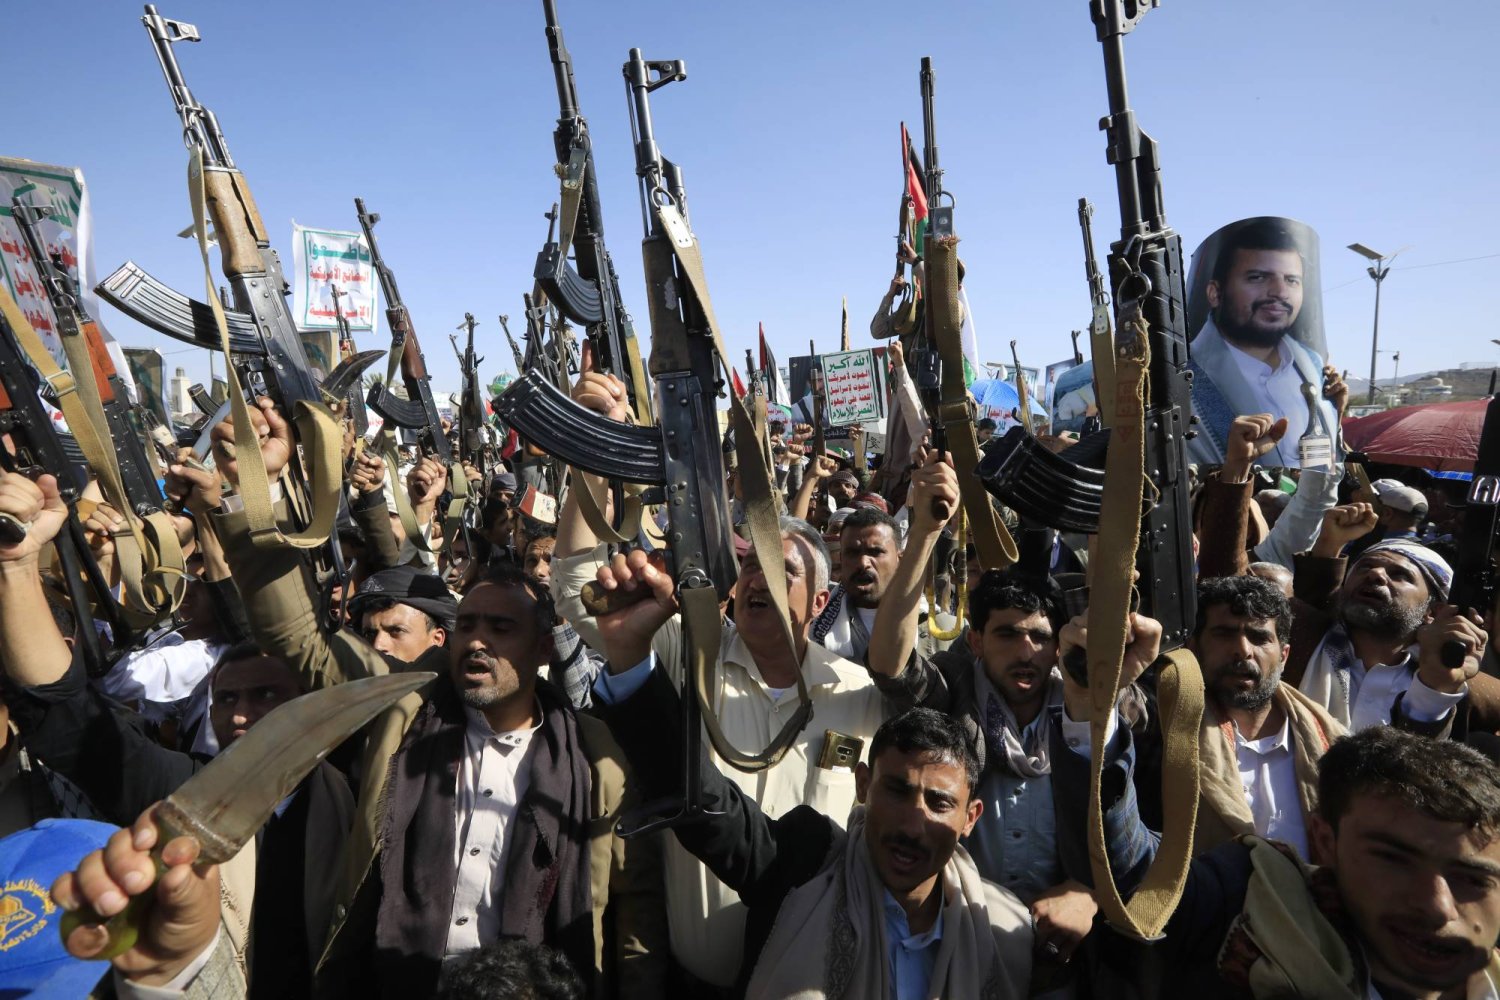 بعد تصعيد جديد... الجيش الأميركي يدمّر مسيرات وصواريخ للحوثيين باليمن